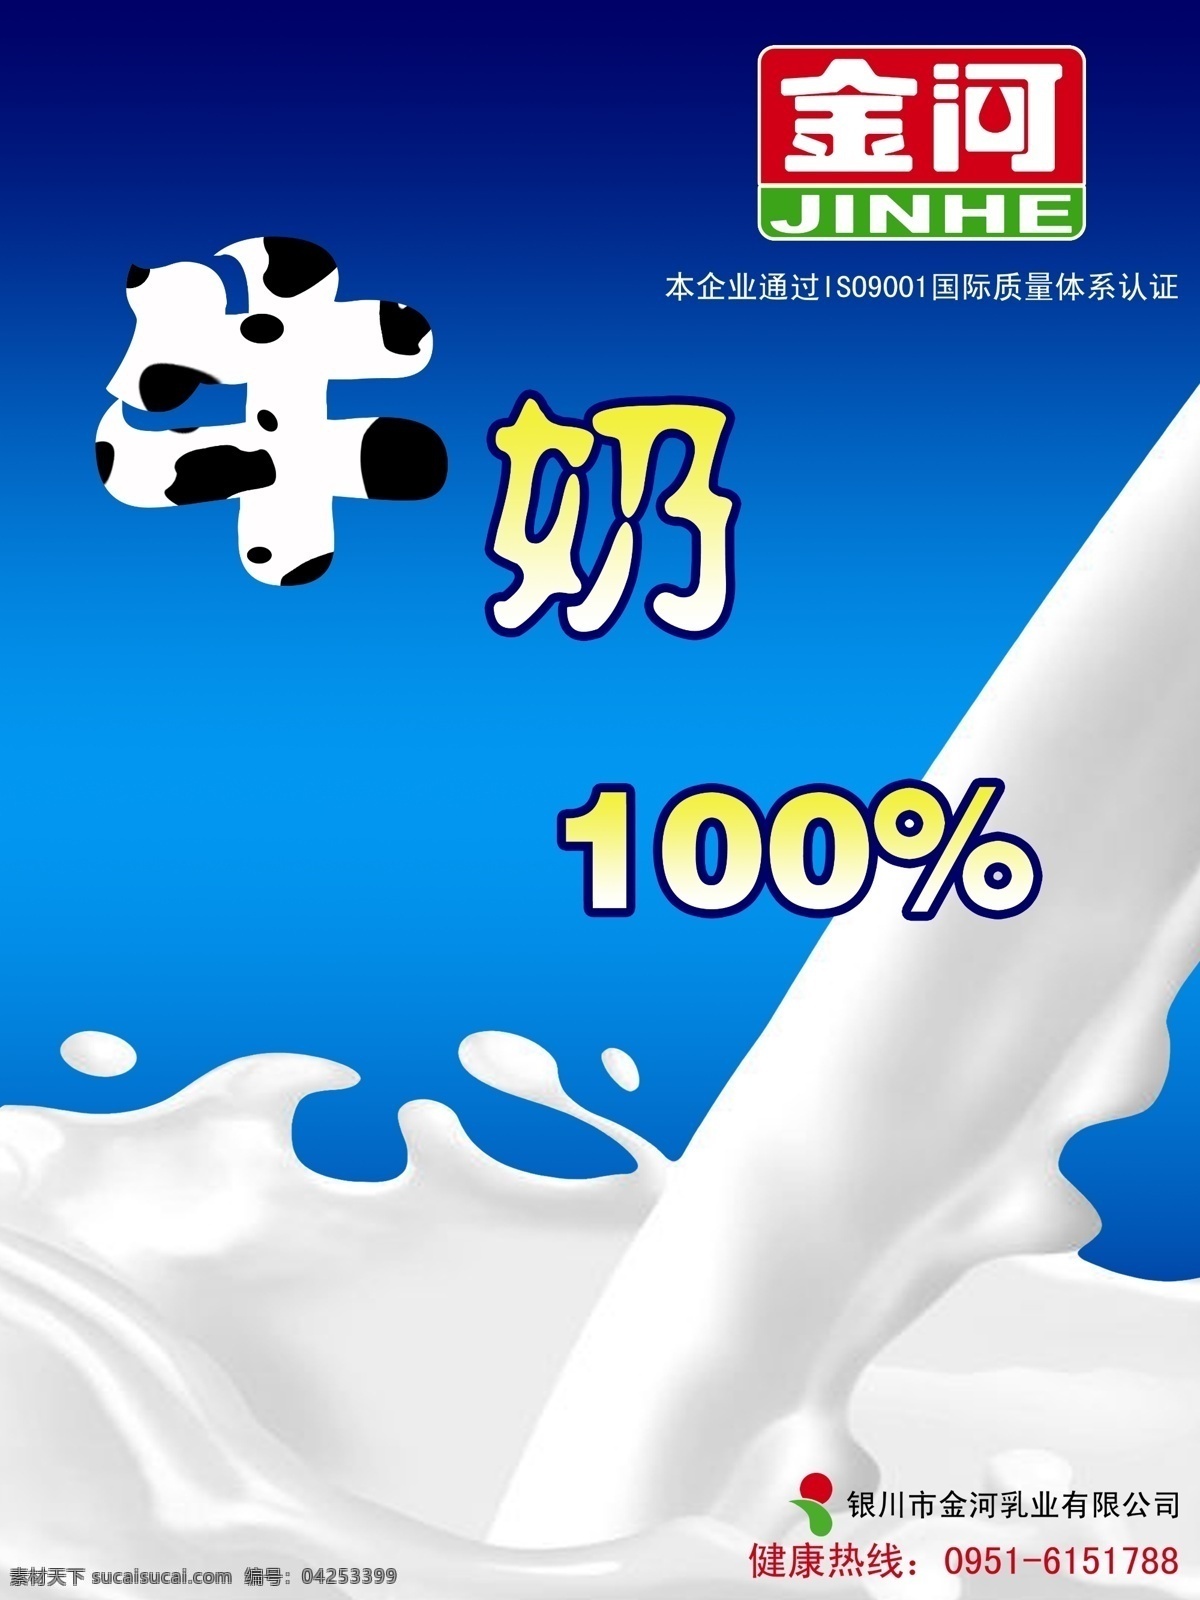 牛奶 模版下载 牛奶素材下载 牛奶模板下载 金河 奶 纯牛奶 溅 蓝色 海报 招贴 简洁 广告 原创 奶花 流动 广告设计模板 源文件 招贴设计